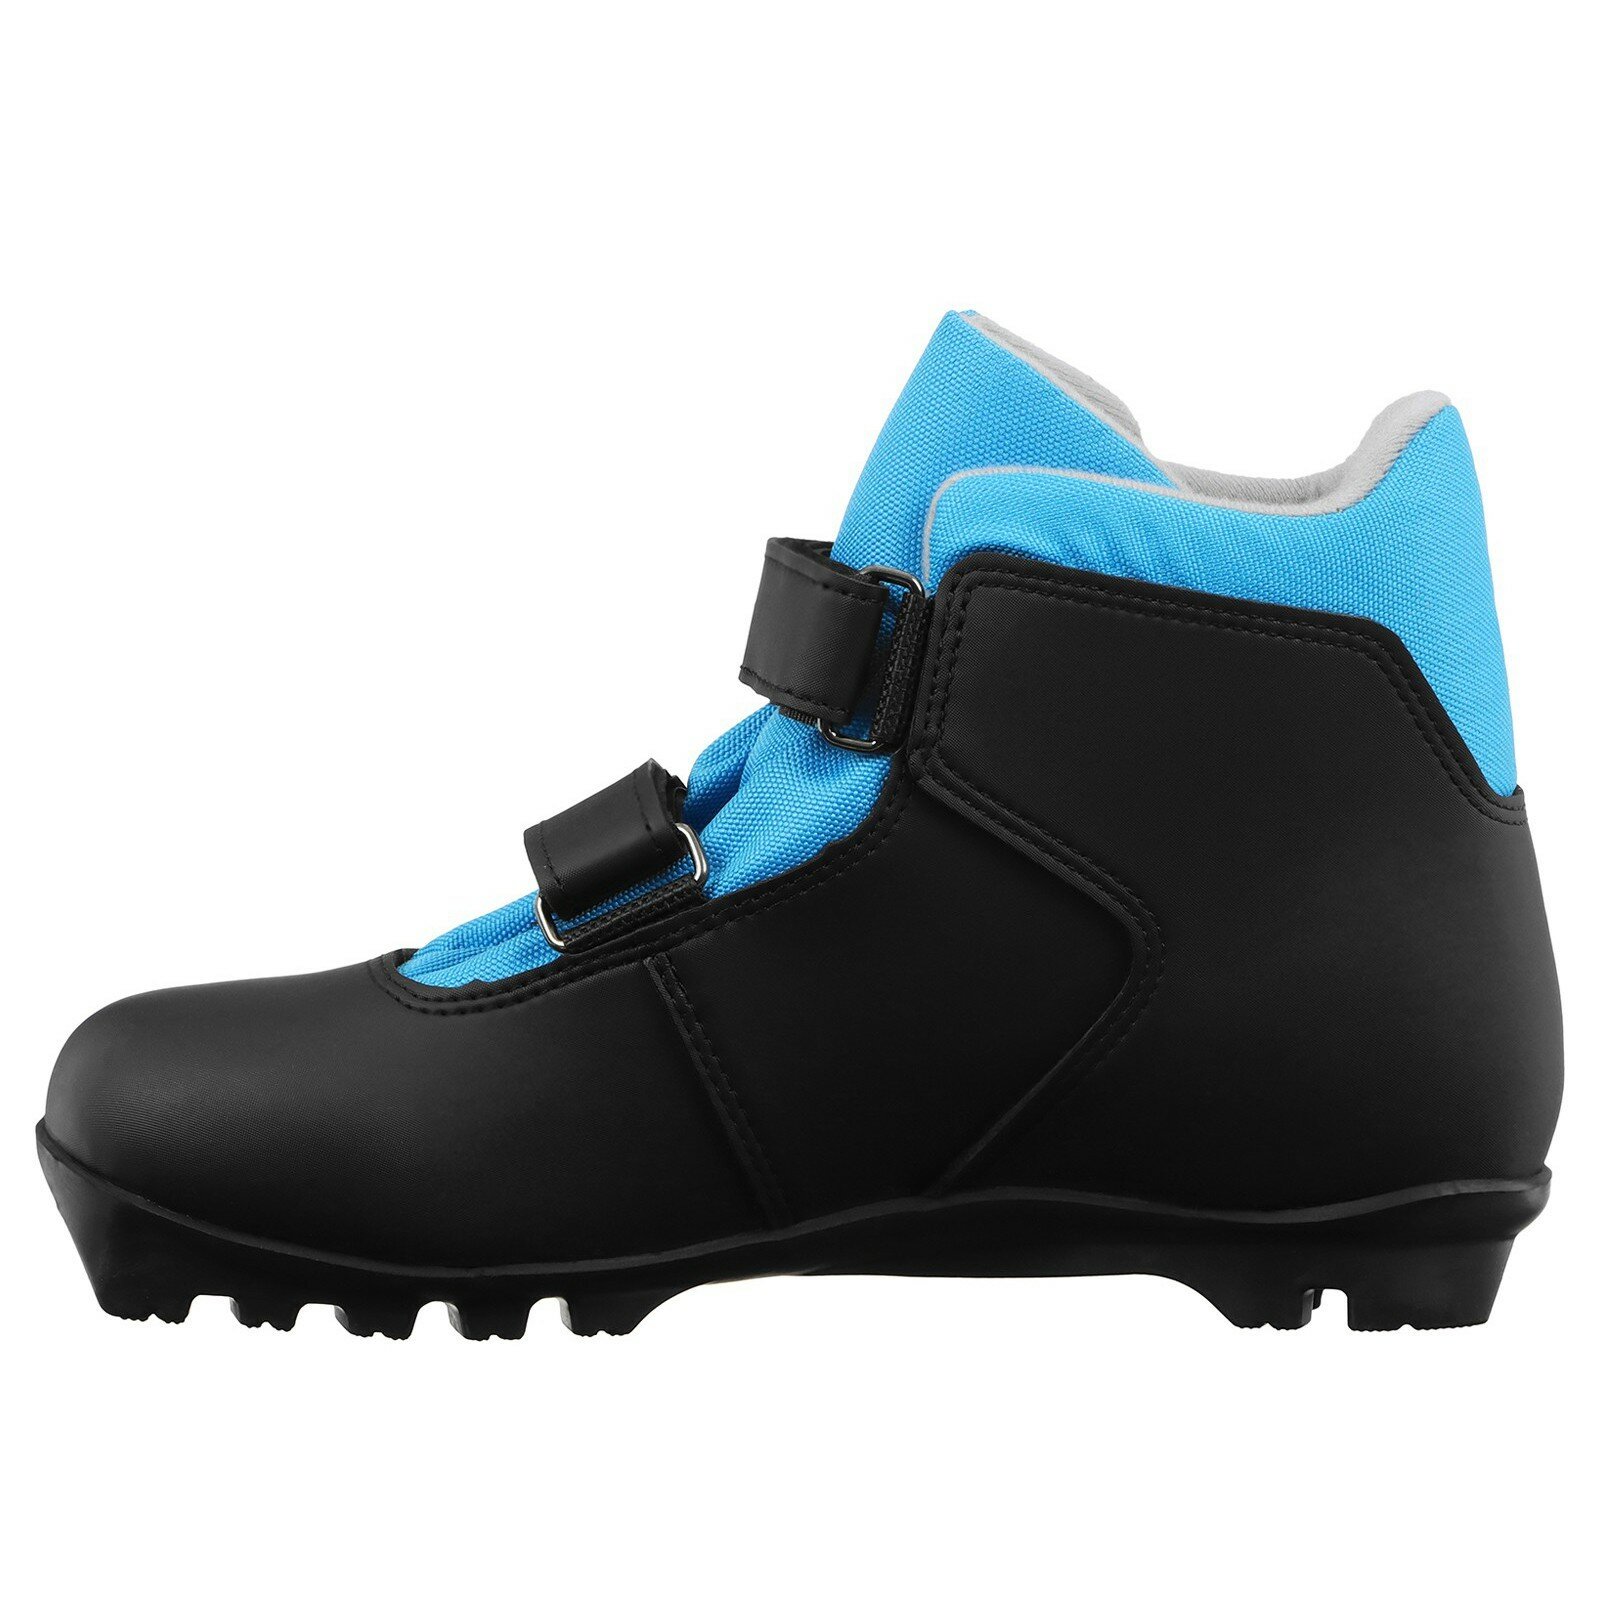 Ботинки лыжные детские Winter Star control kids, NNN, размер 32, цвет чёрный, синий